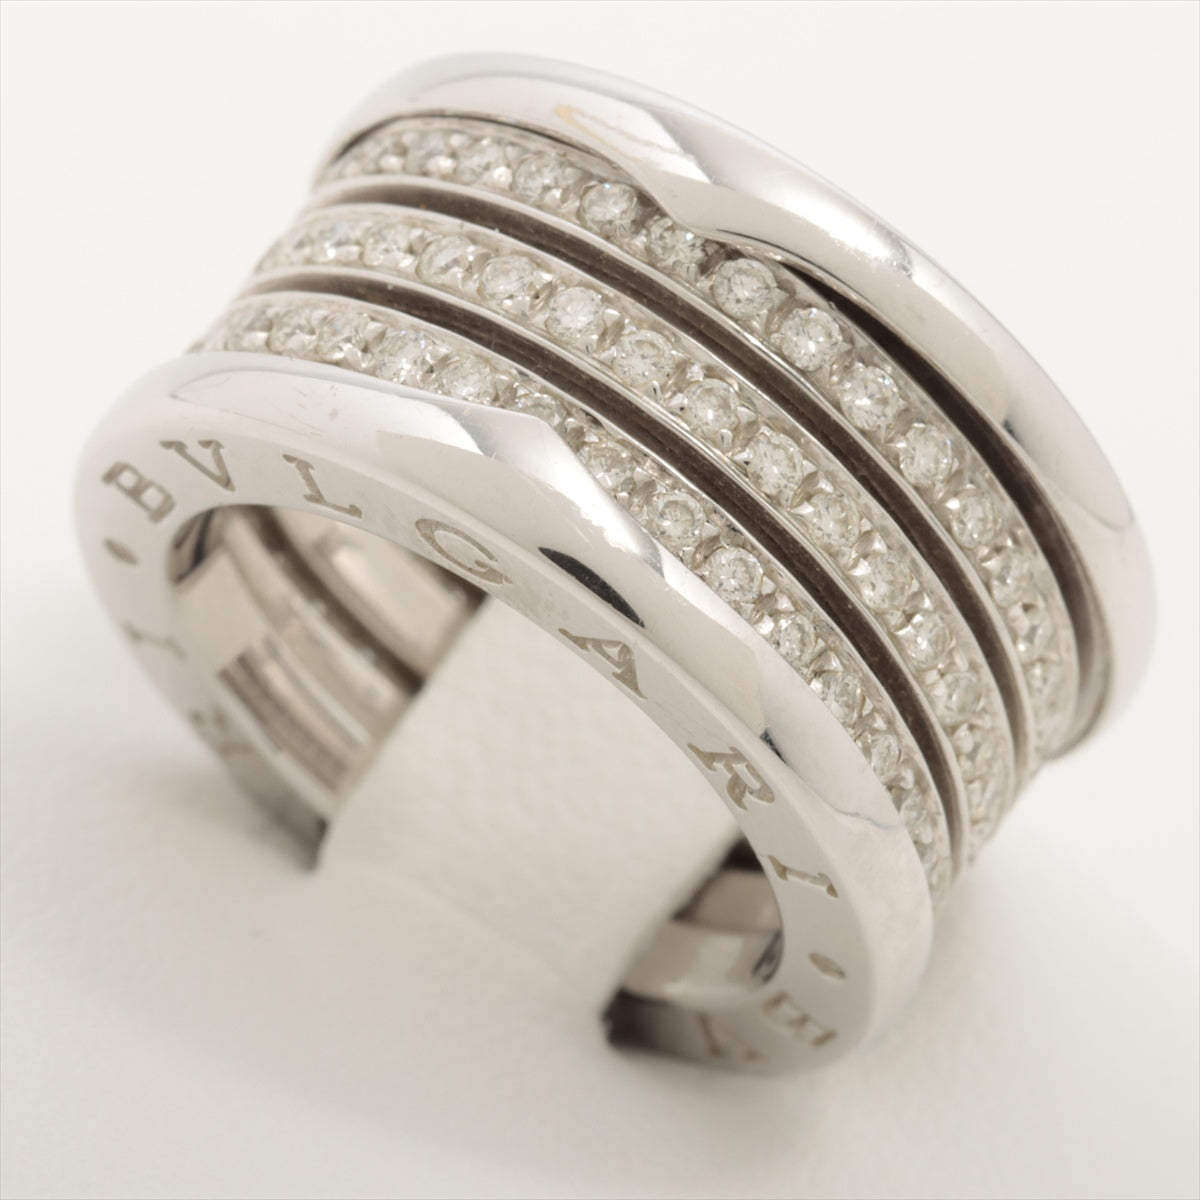 Bvlgari B.Zero 1 full diamond rings 750(WG) 14.4g 50